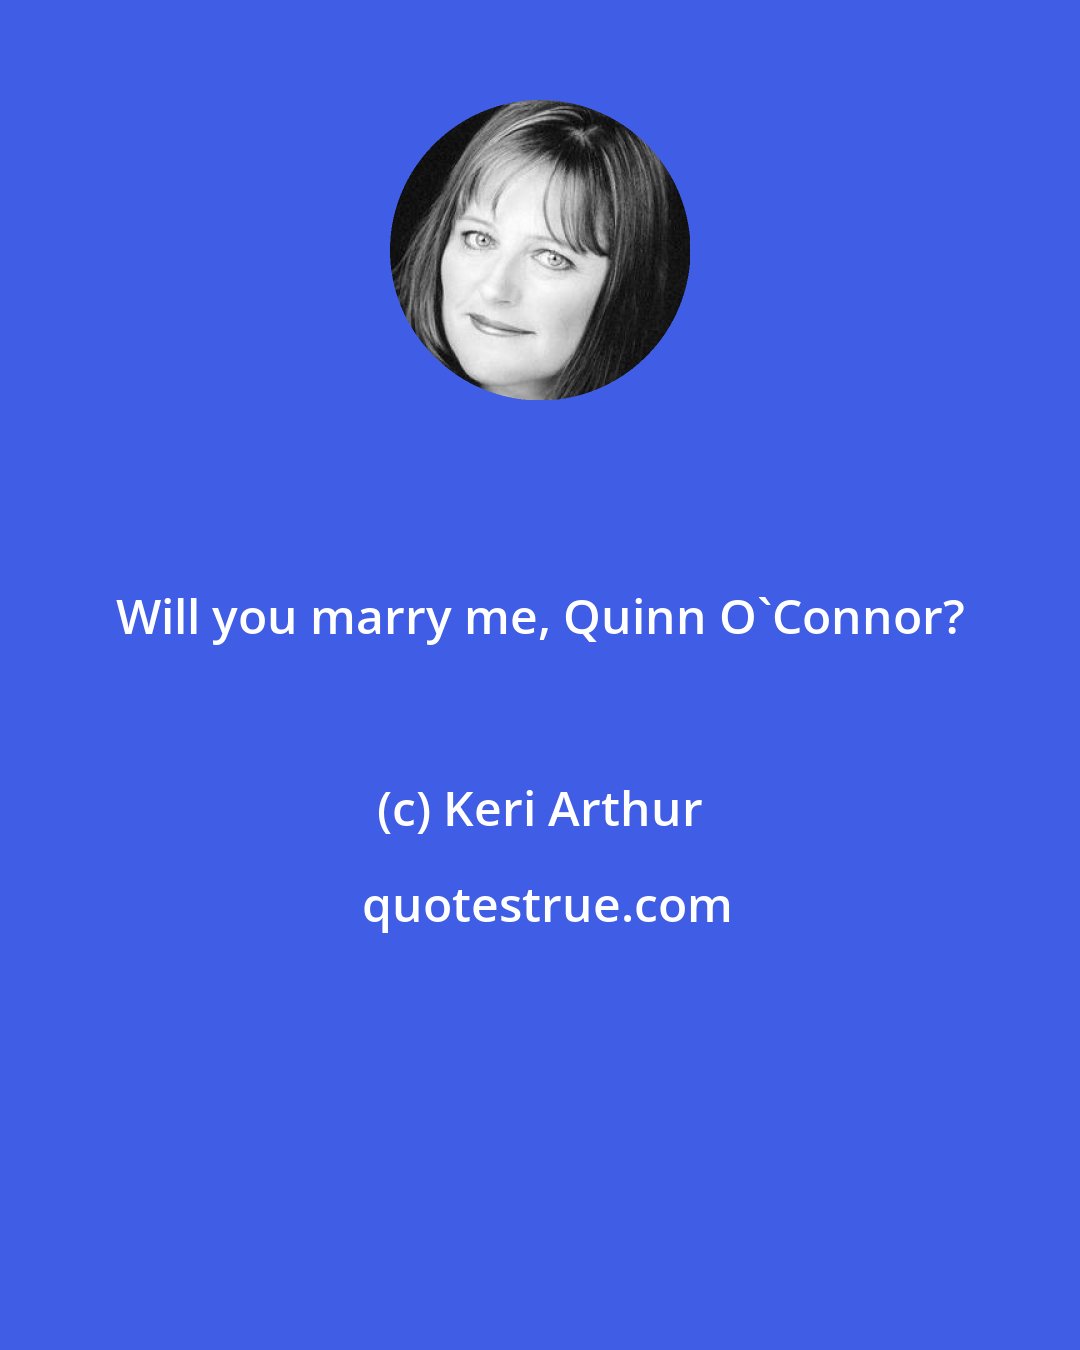 Keri Arthur: Will you marry me, Quinn O'Connor?